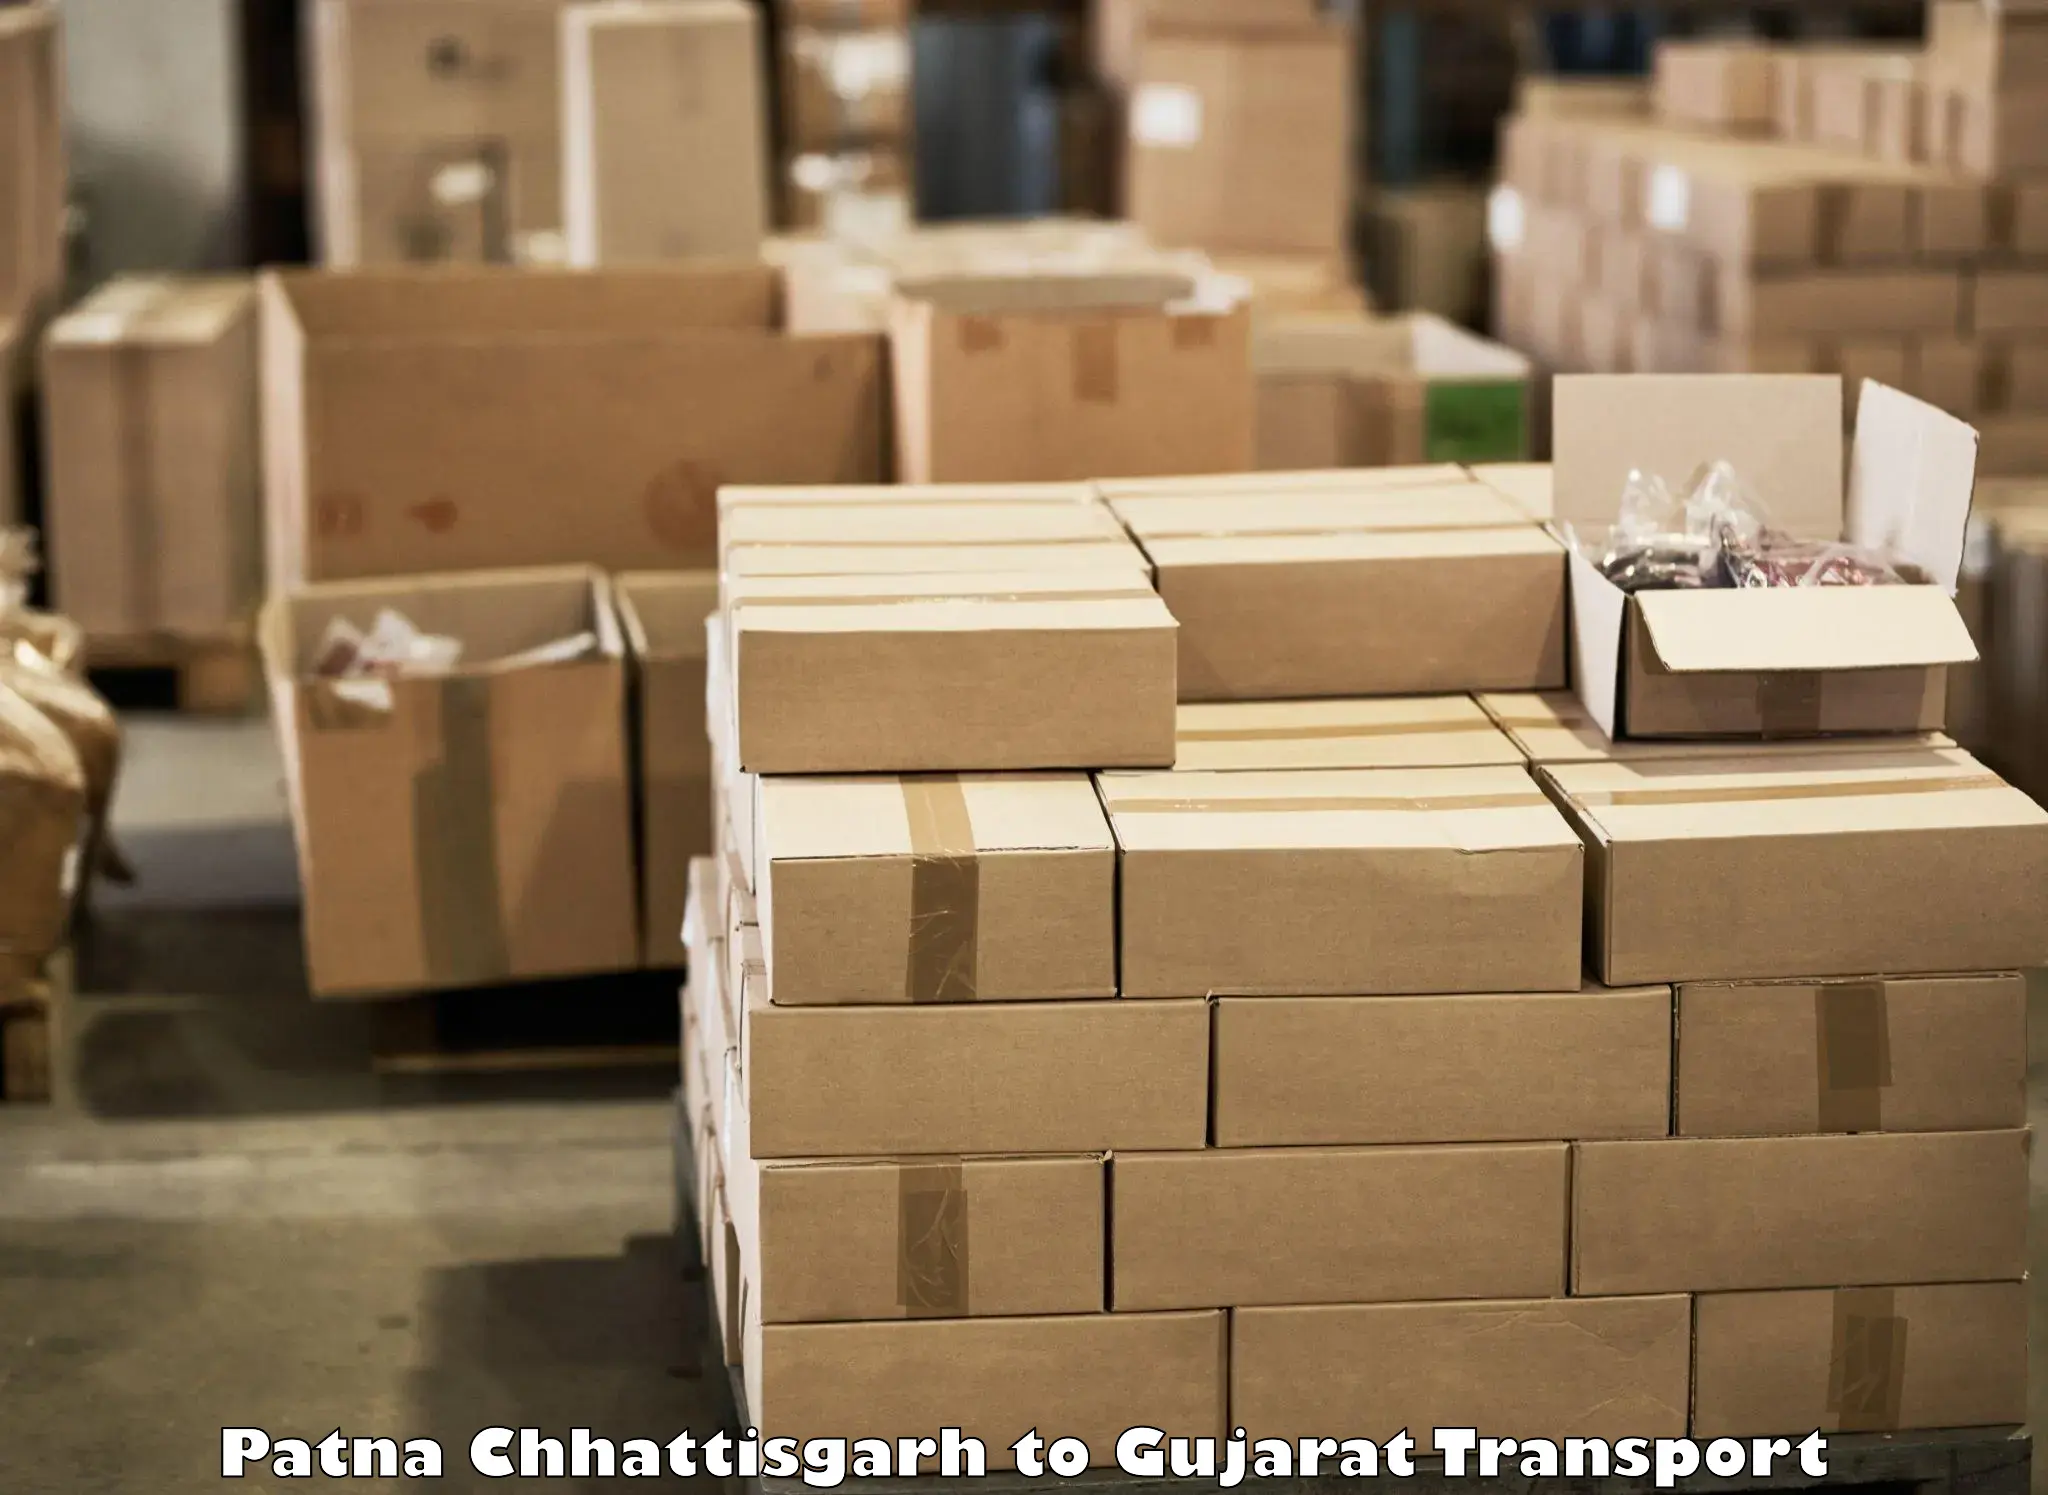 Daily parcel service transport Patna Chhattisgarh to IIIT Vadodara